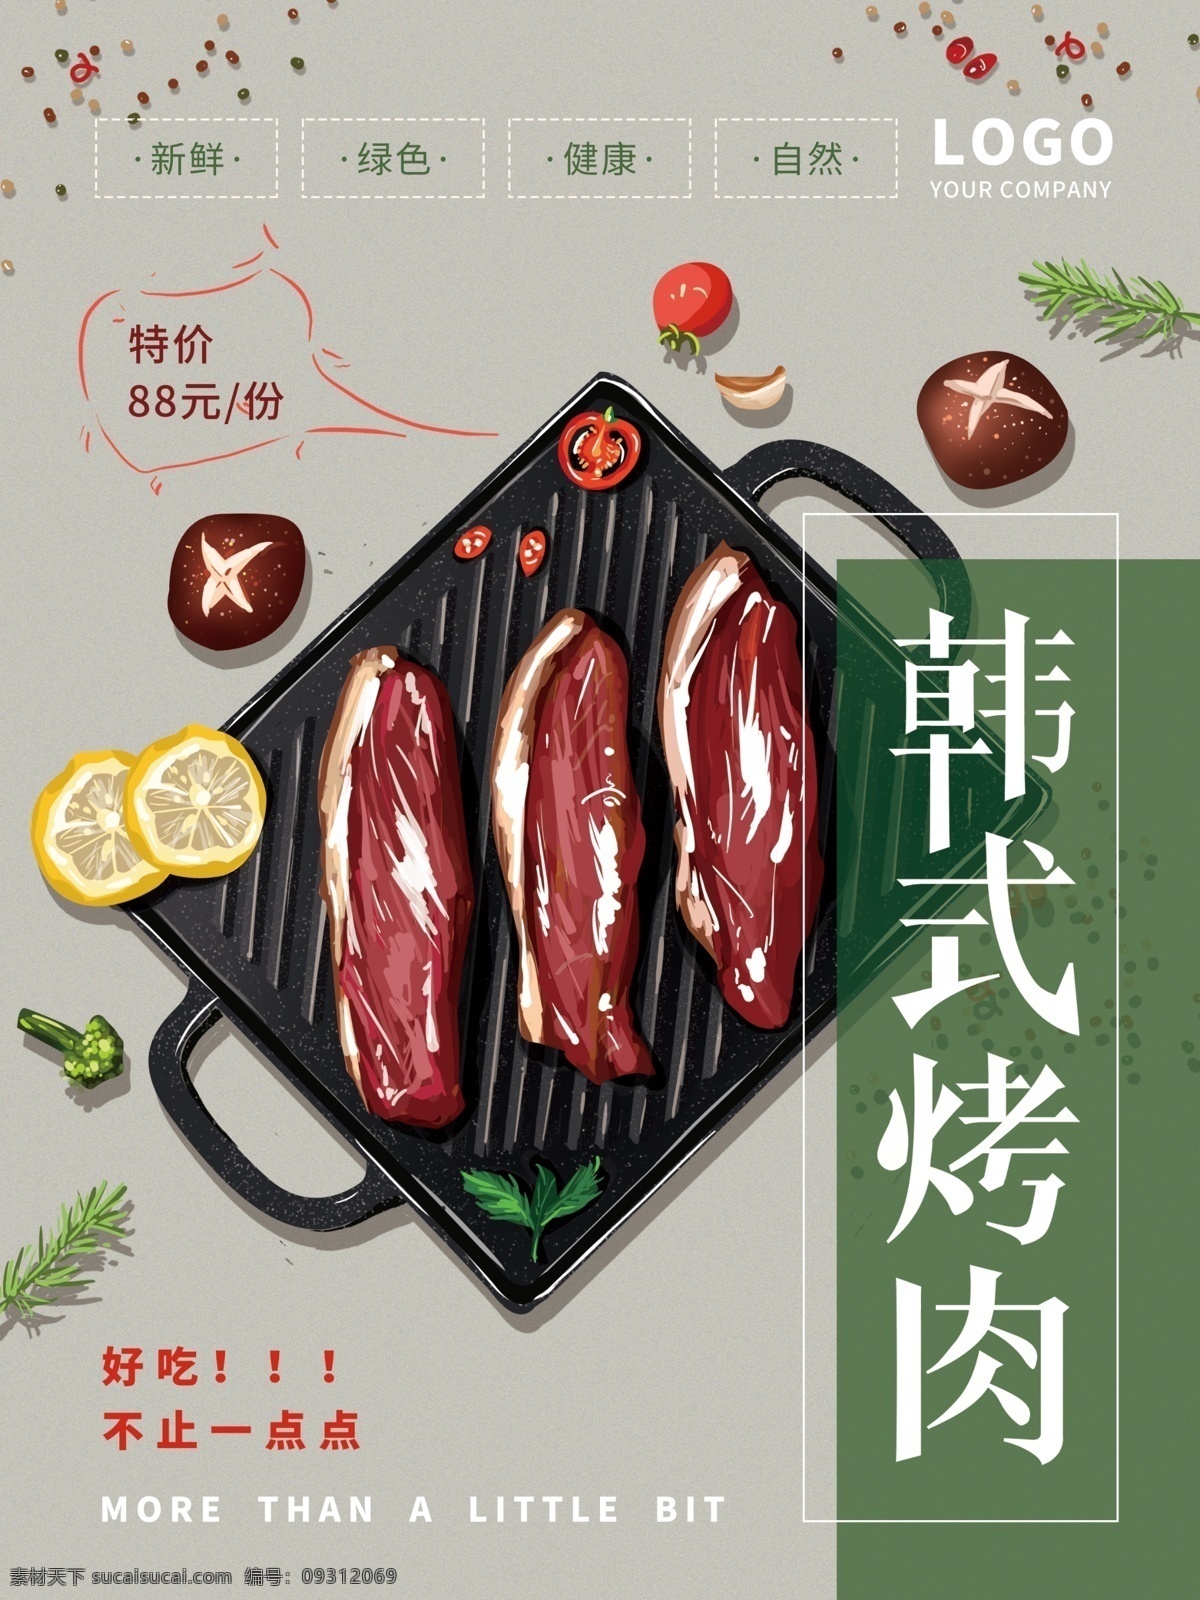 原创 手绘 清新 自然 韩式 烤肉 美食 海报 简约 蔬菜